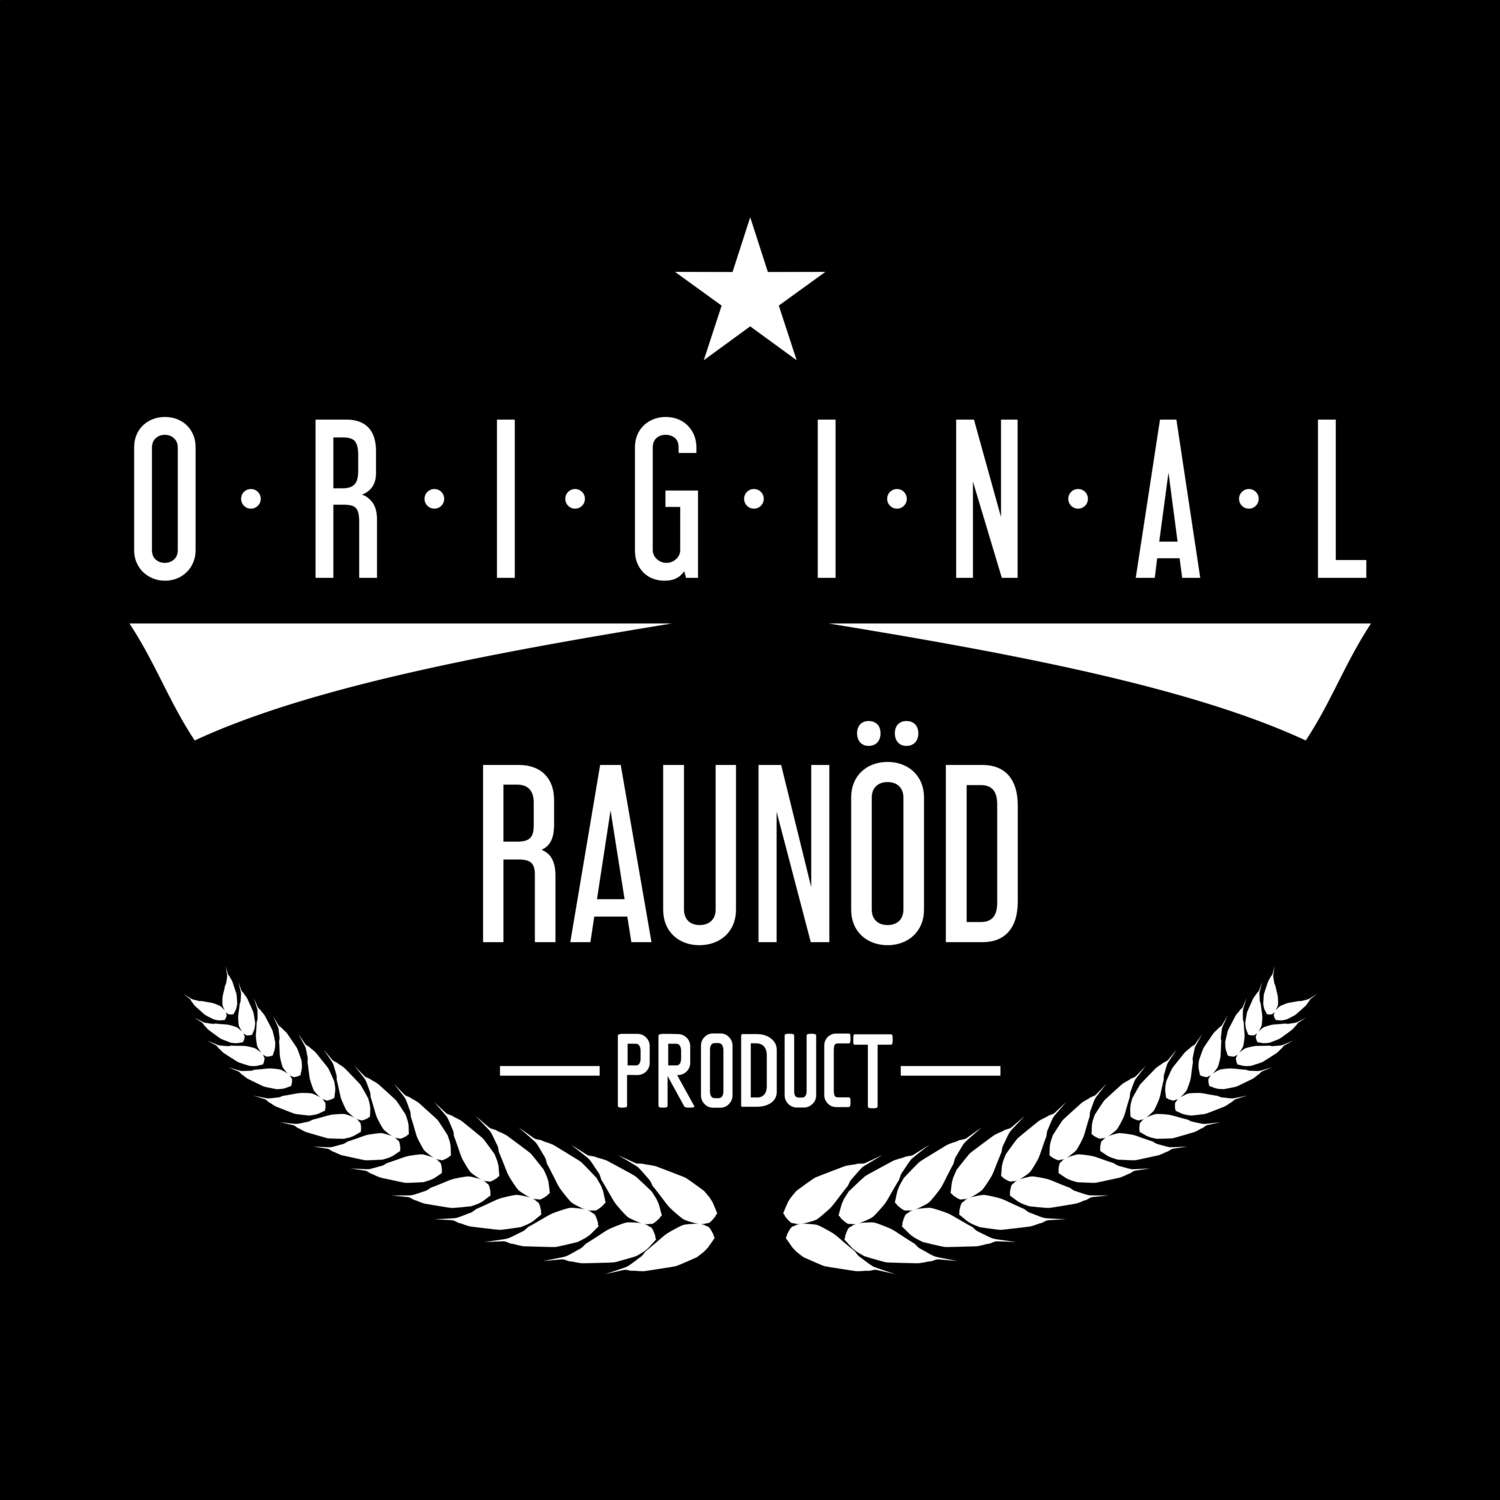 Raunöd T-Shirt »Original Product«